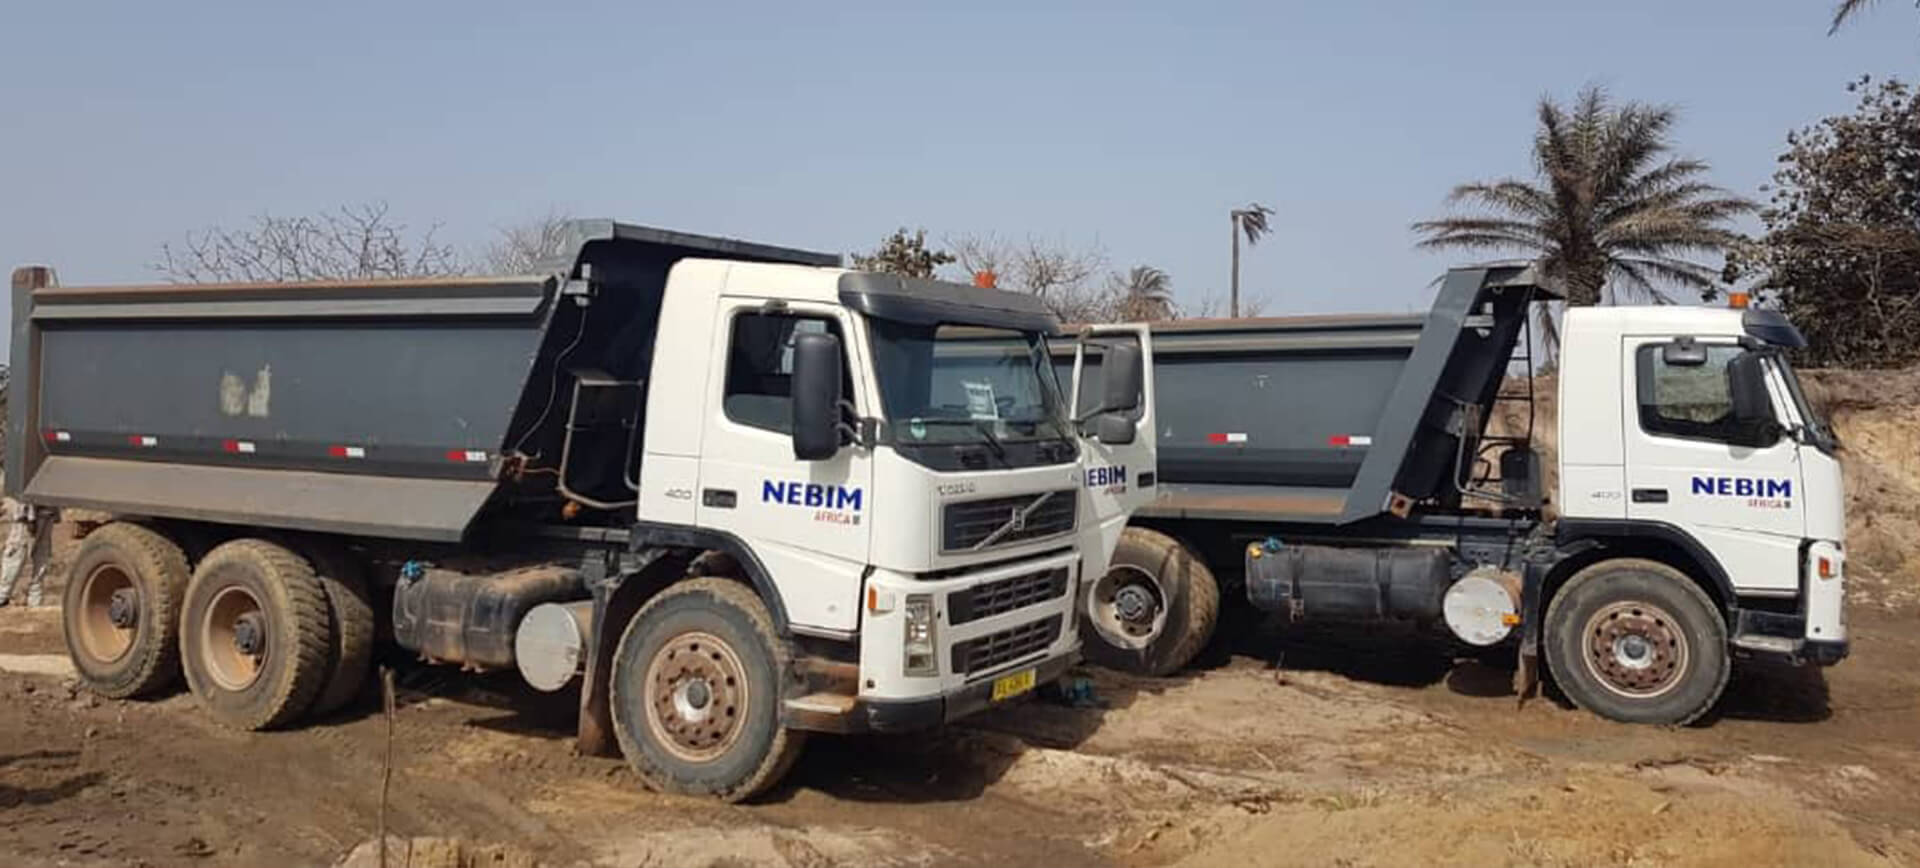 Volvo Dump Trucks Nebim Africa